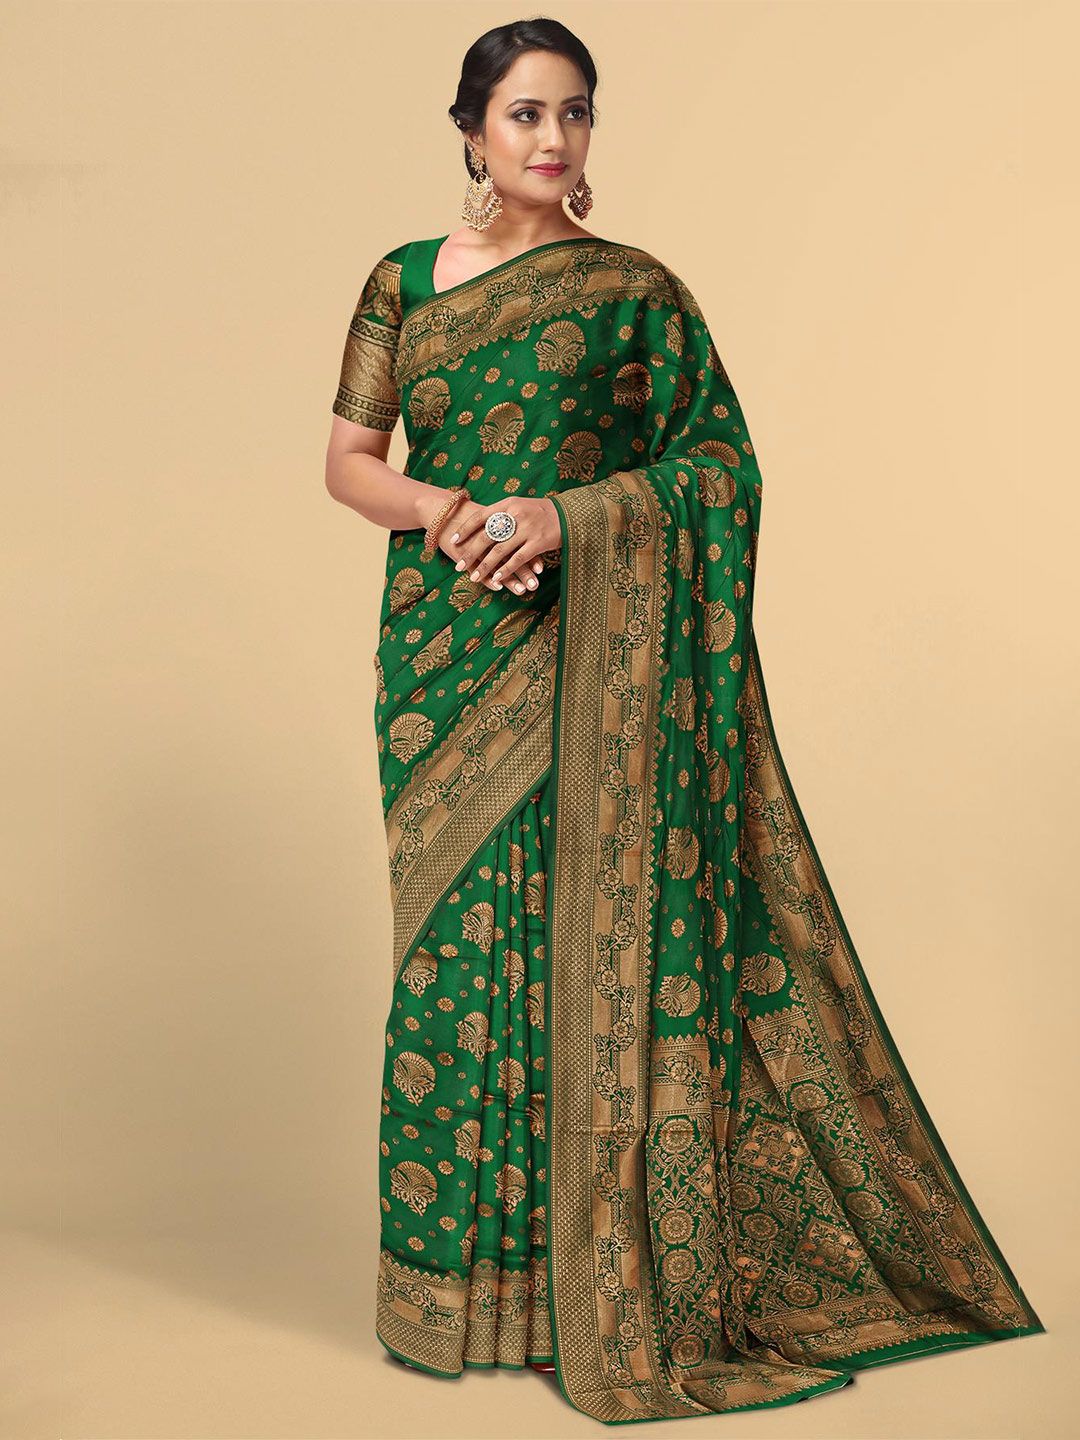 Kalamandir Green & Gold-Toned Floral Zari Silk Blend Saree Price in India